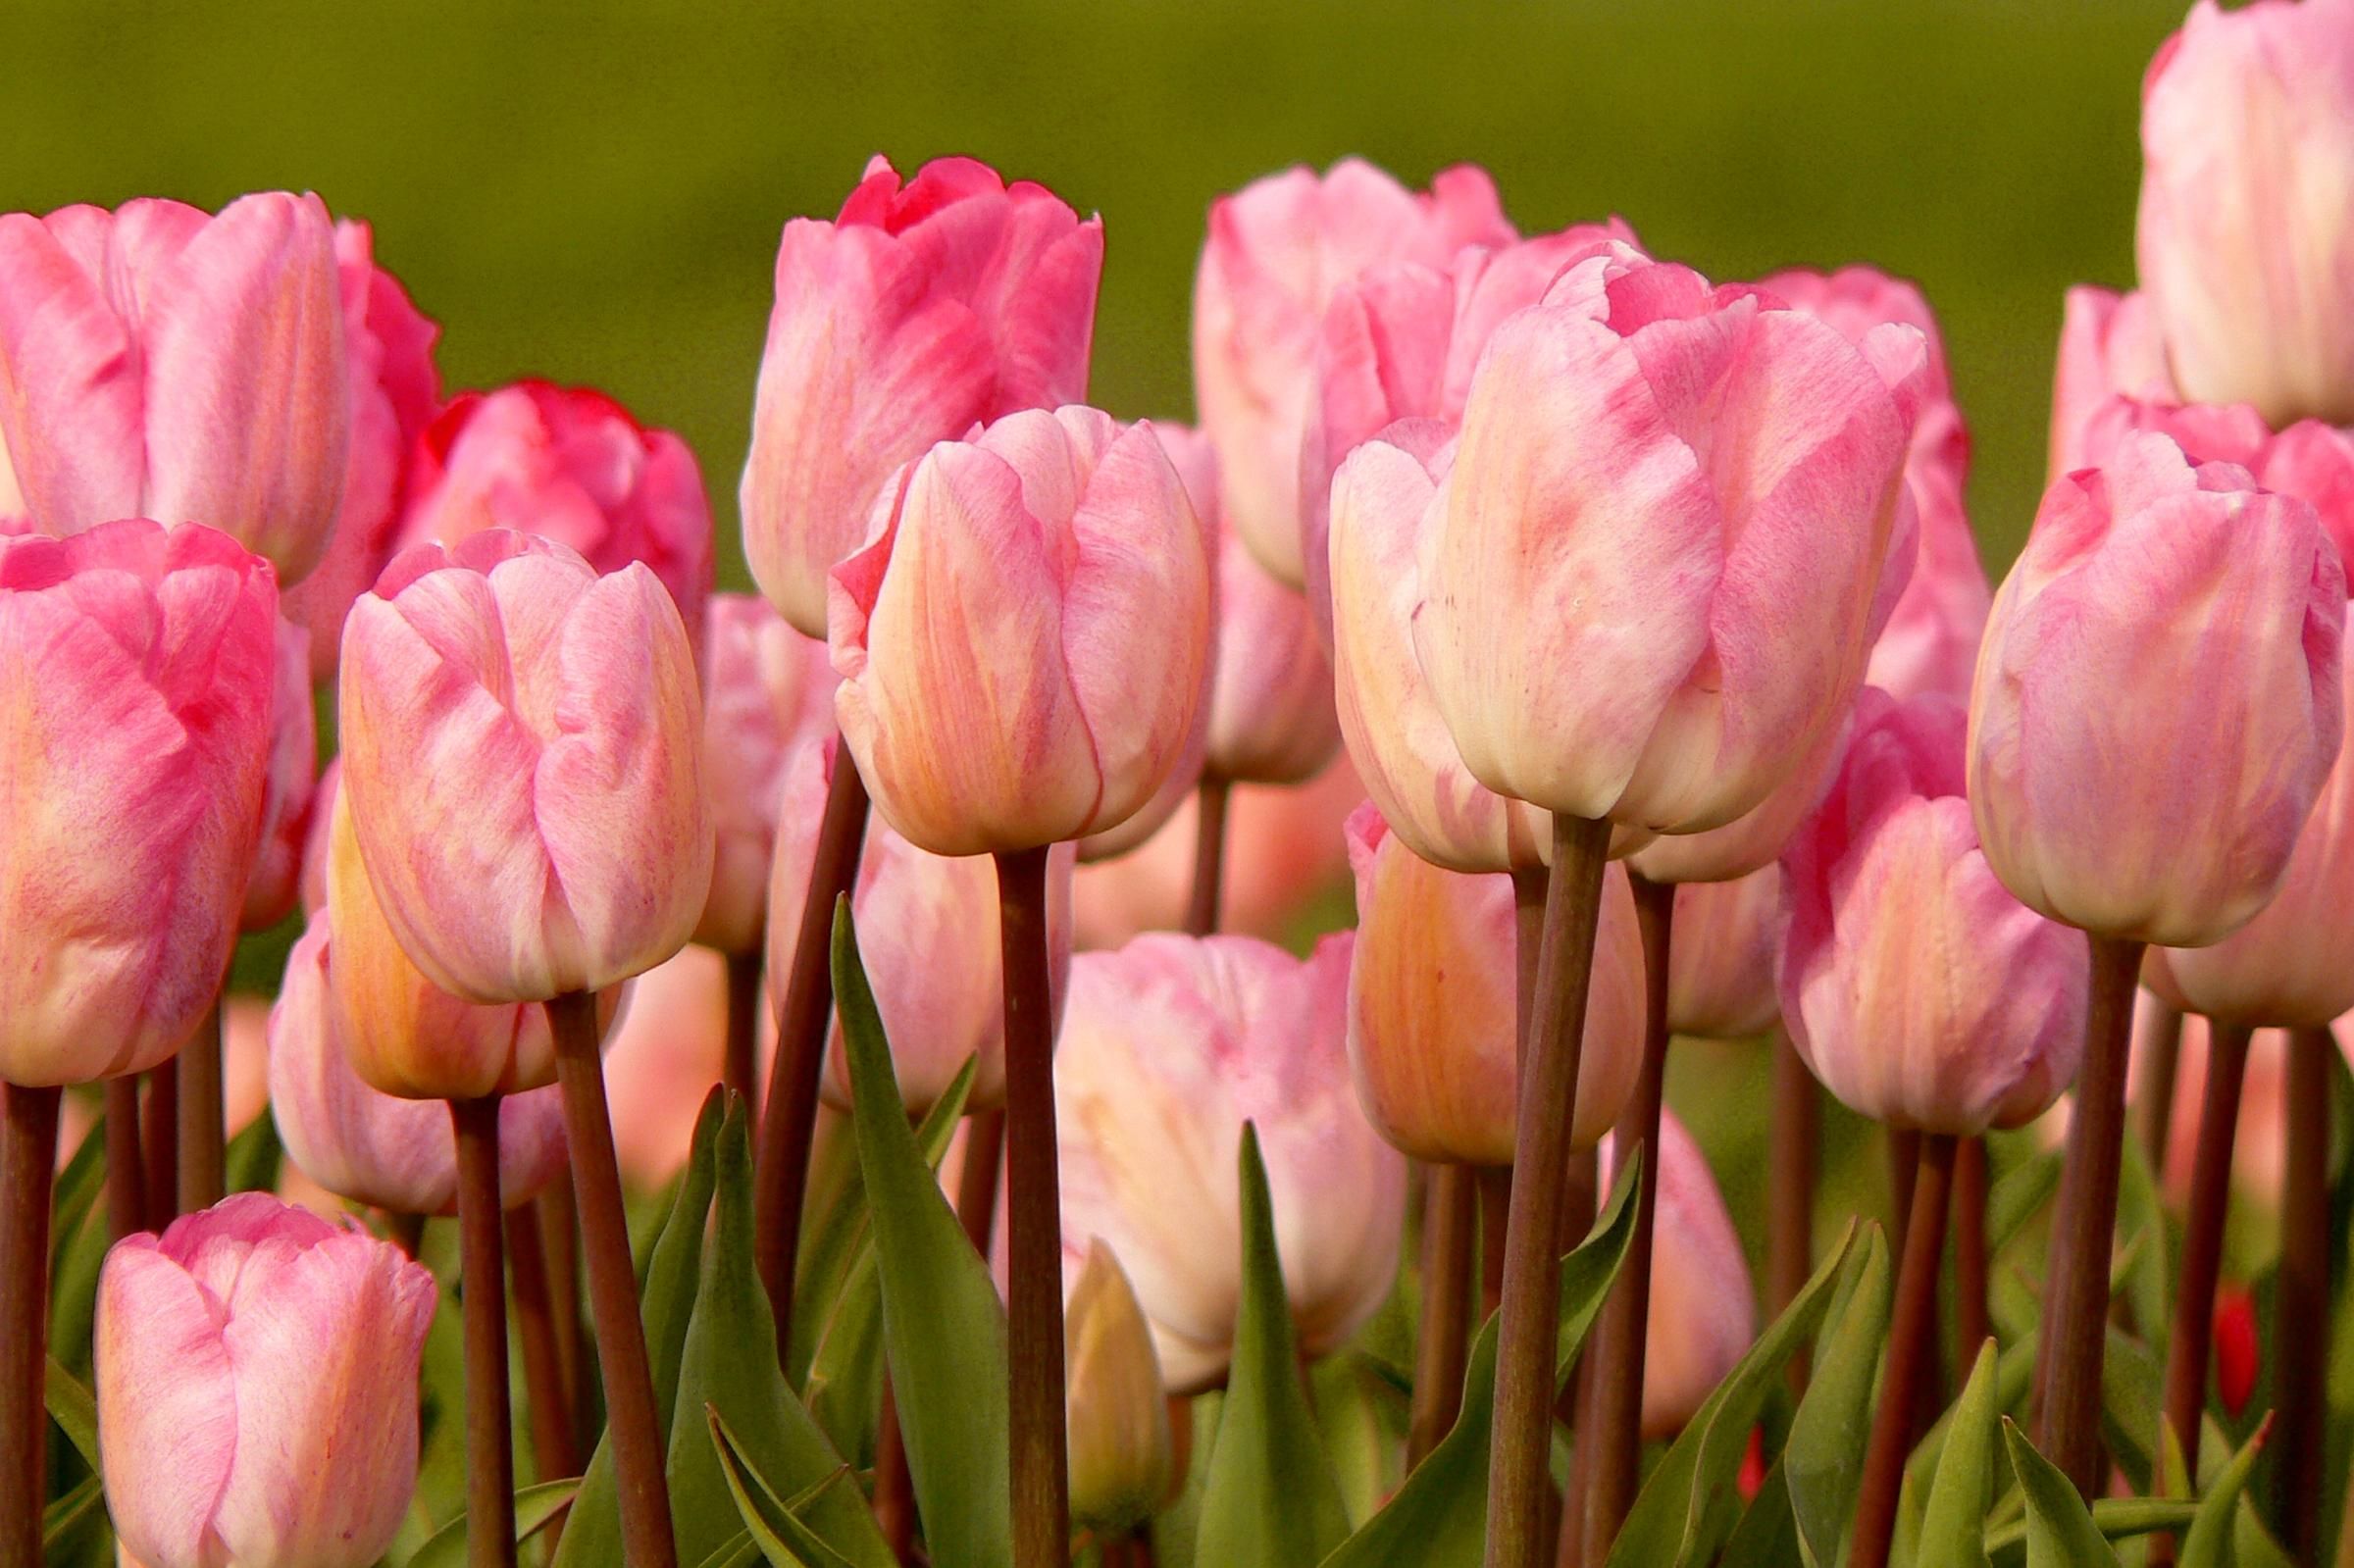 sfondi 720p per android,fiore,pianta fiorita,petalo,tulipano,rosa